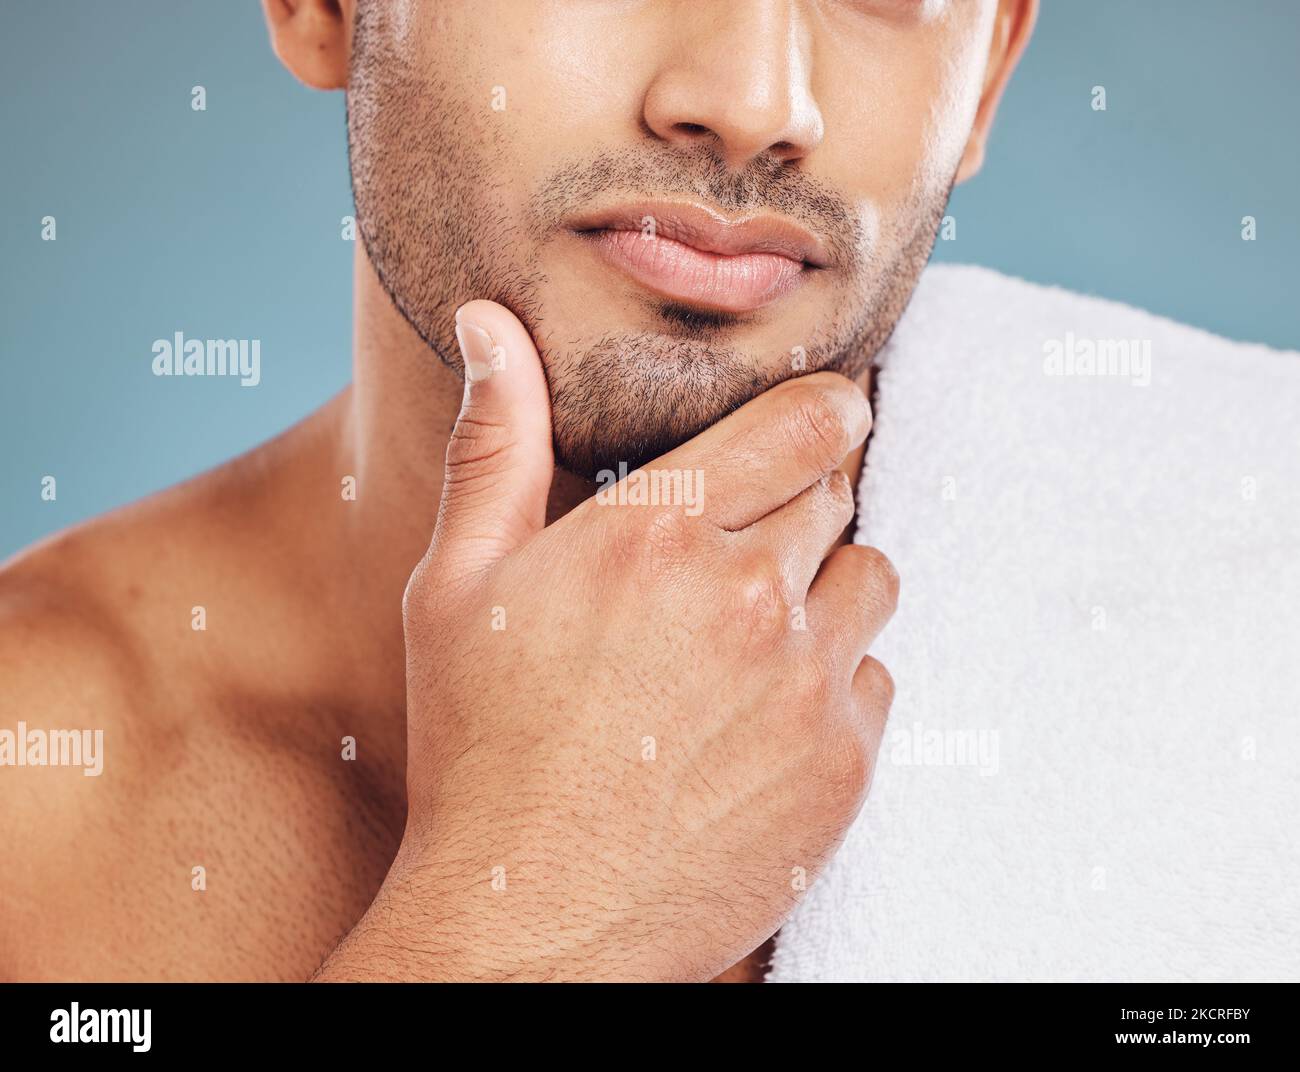 Bartpflege, Pflege und Gesicht des Mannes zufrieden mit Gesichtsreinigung Routine, Self-Care-Behandlung und Beauty-Spa-Gesundheitsversorgung. Wellness, Dermatologie und Stockfoto